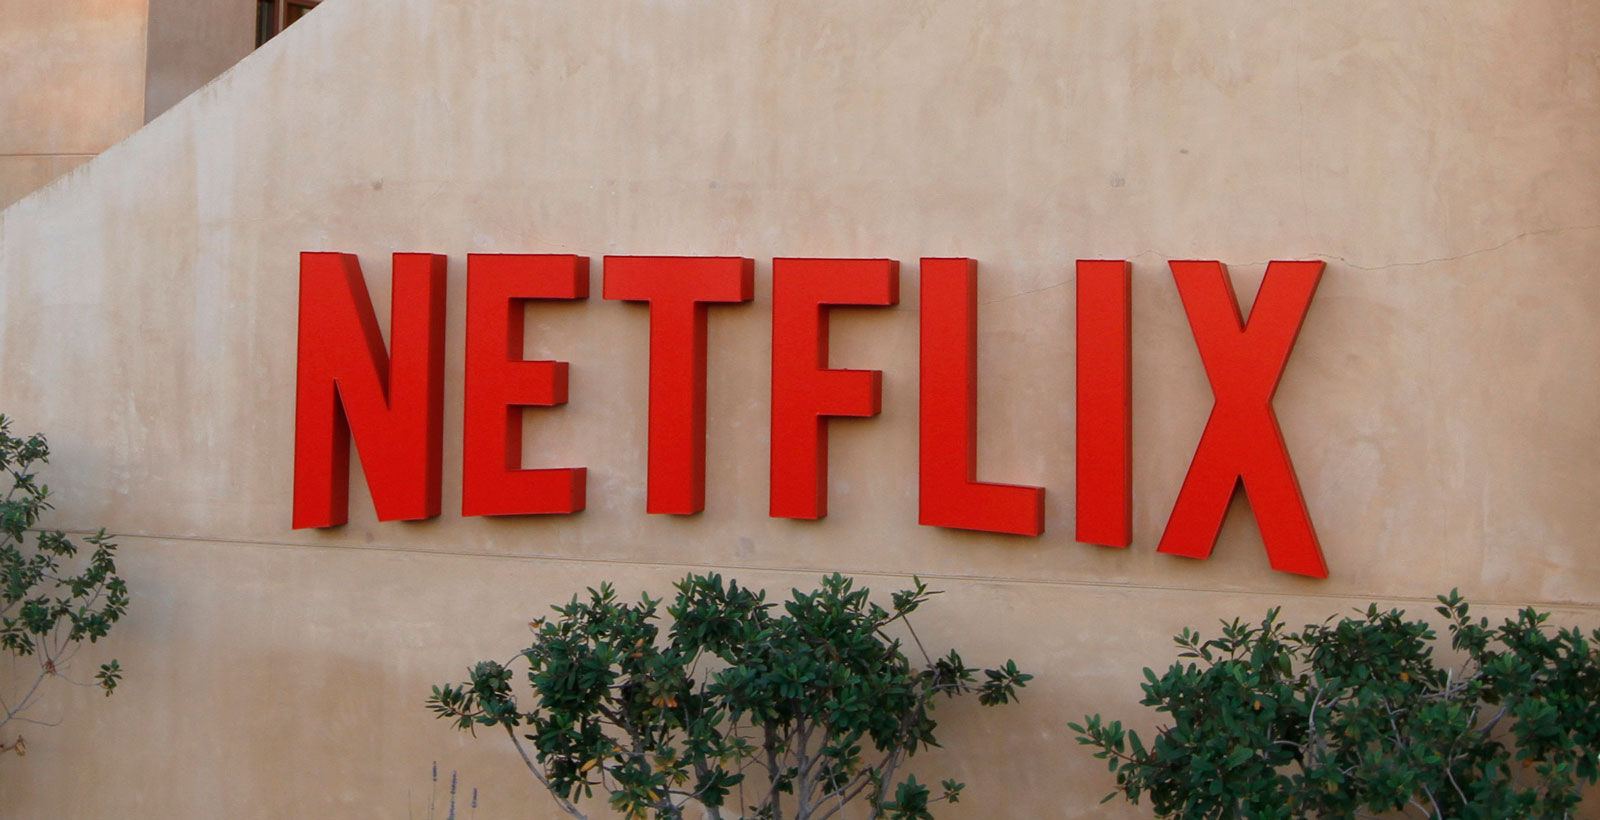 L'ancien directeur technique de Netflix condamné pour avoir reçu des dessous de table